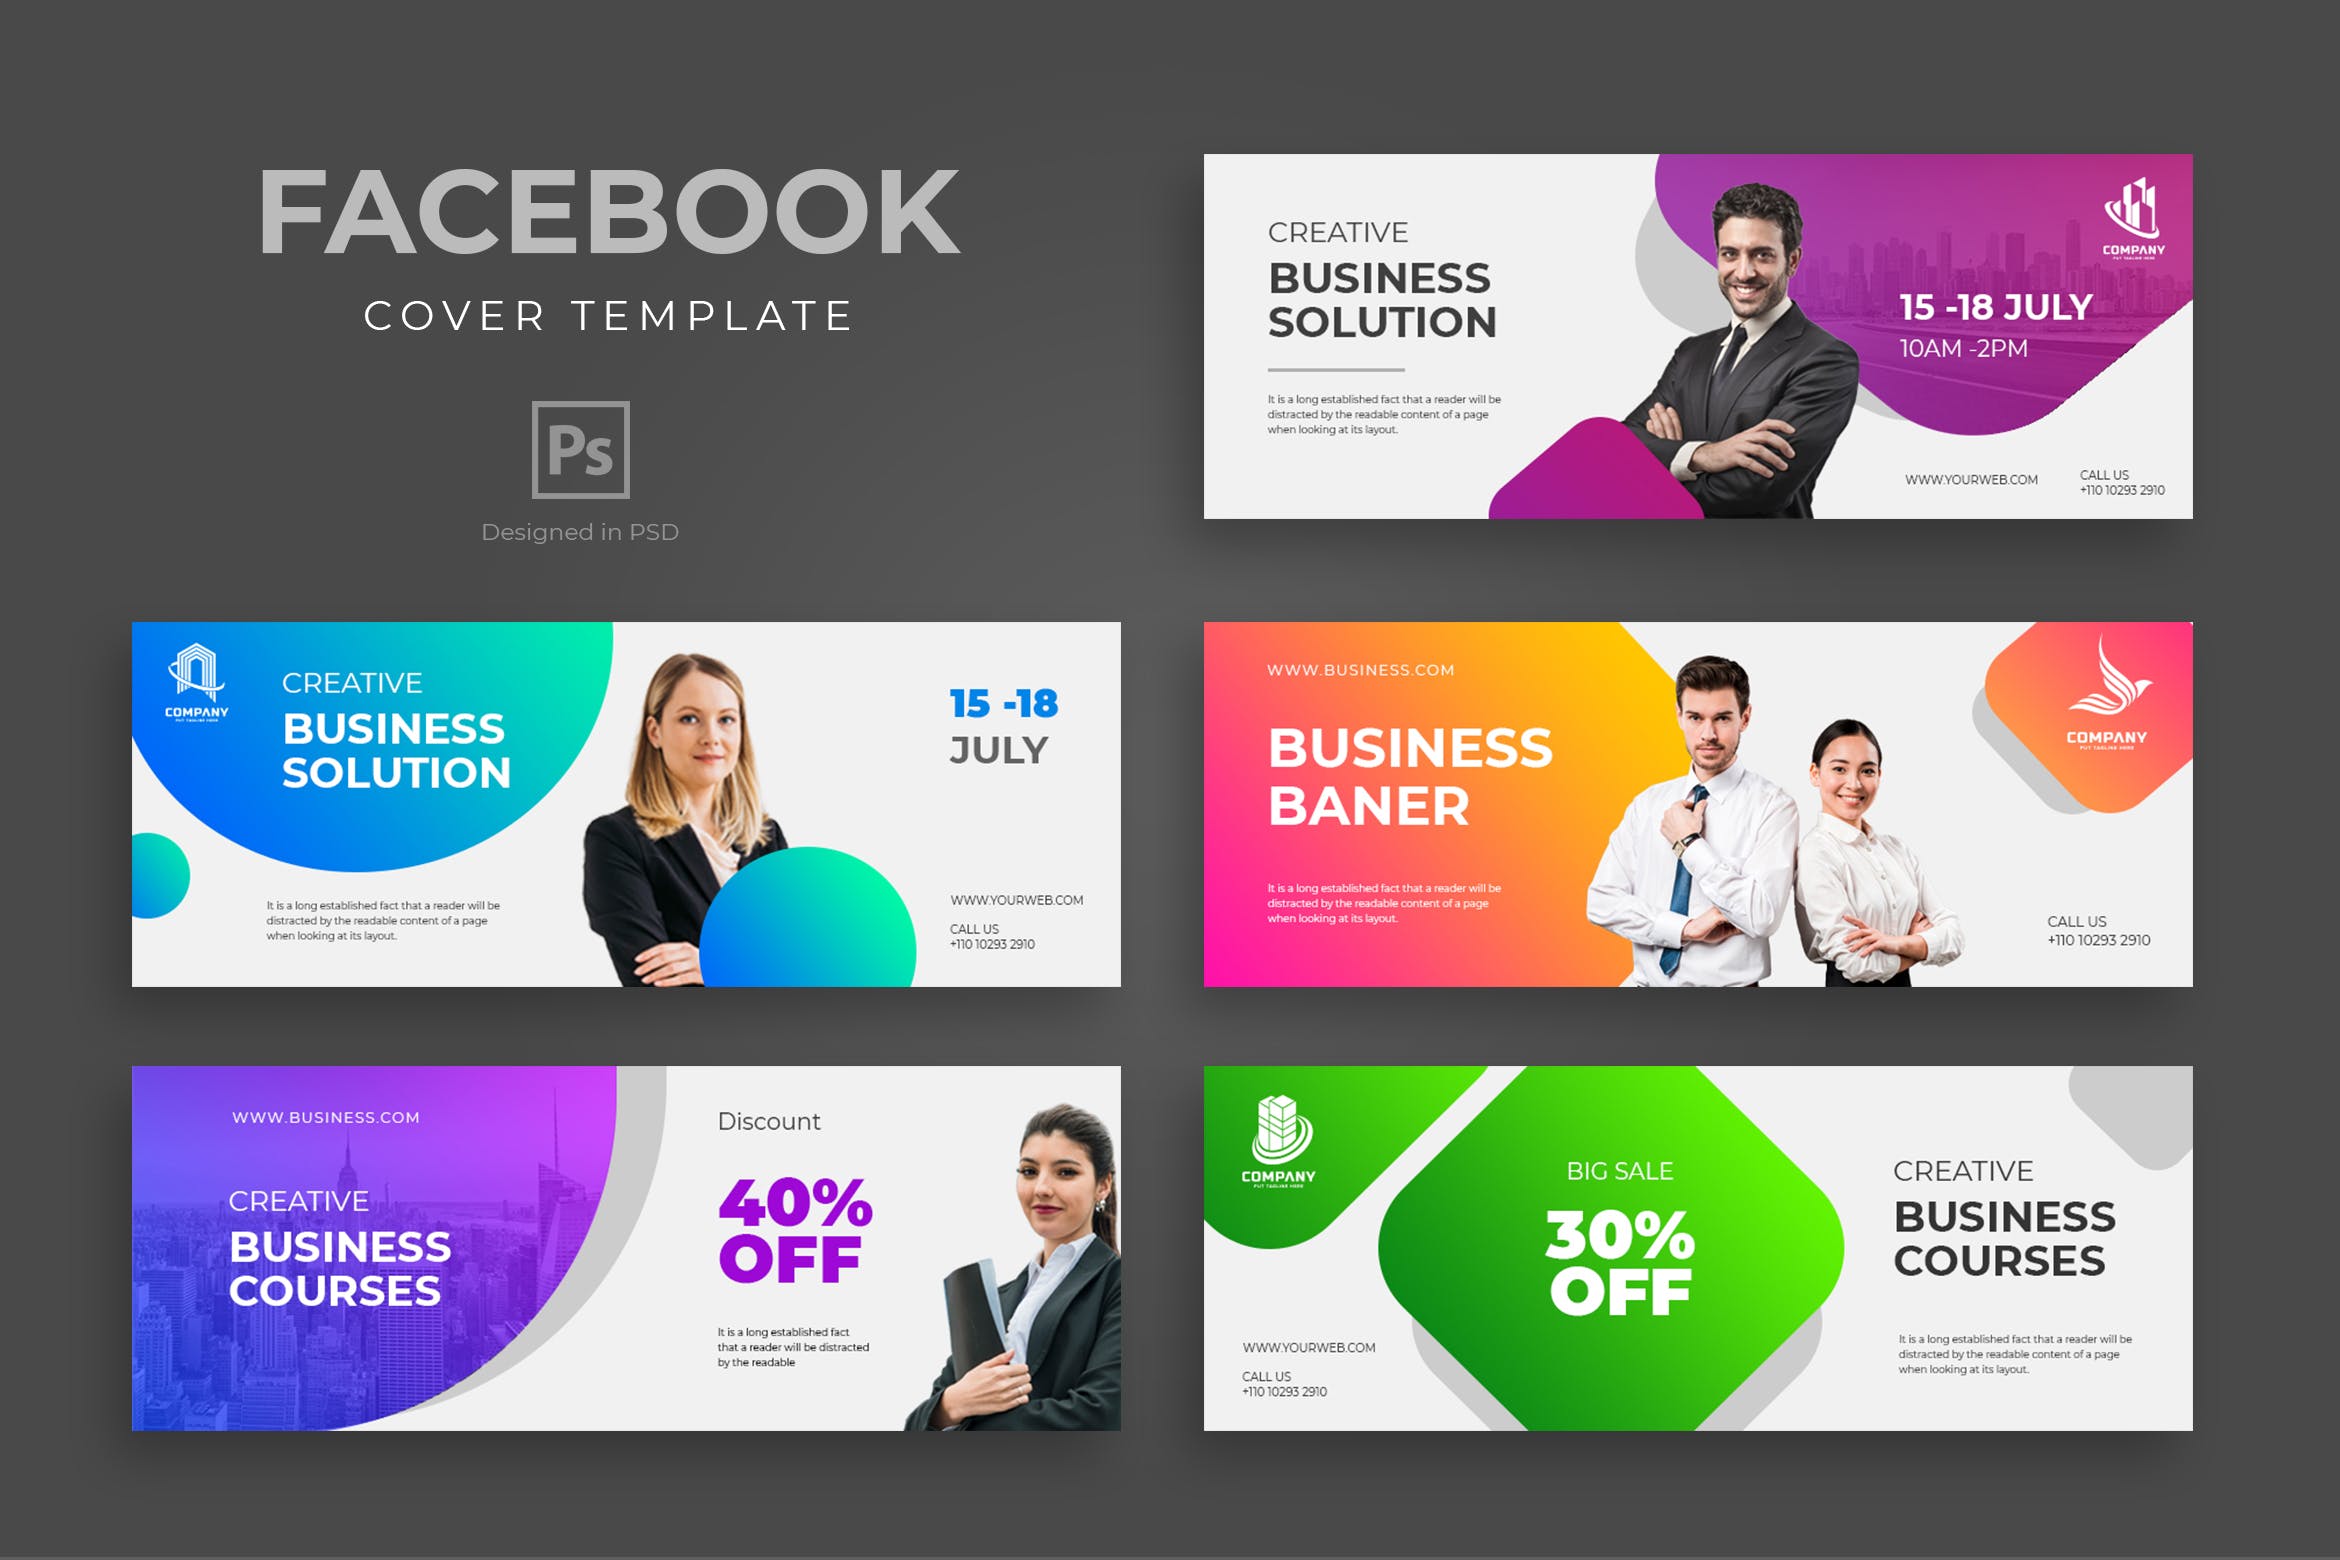 企业咨询服务Facebook主页封面设计模板第一素材精选 Business Facebook Cover Template插图